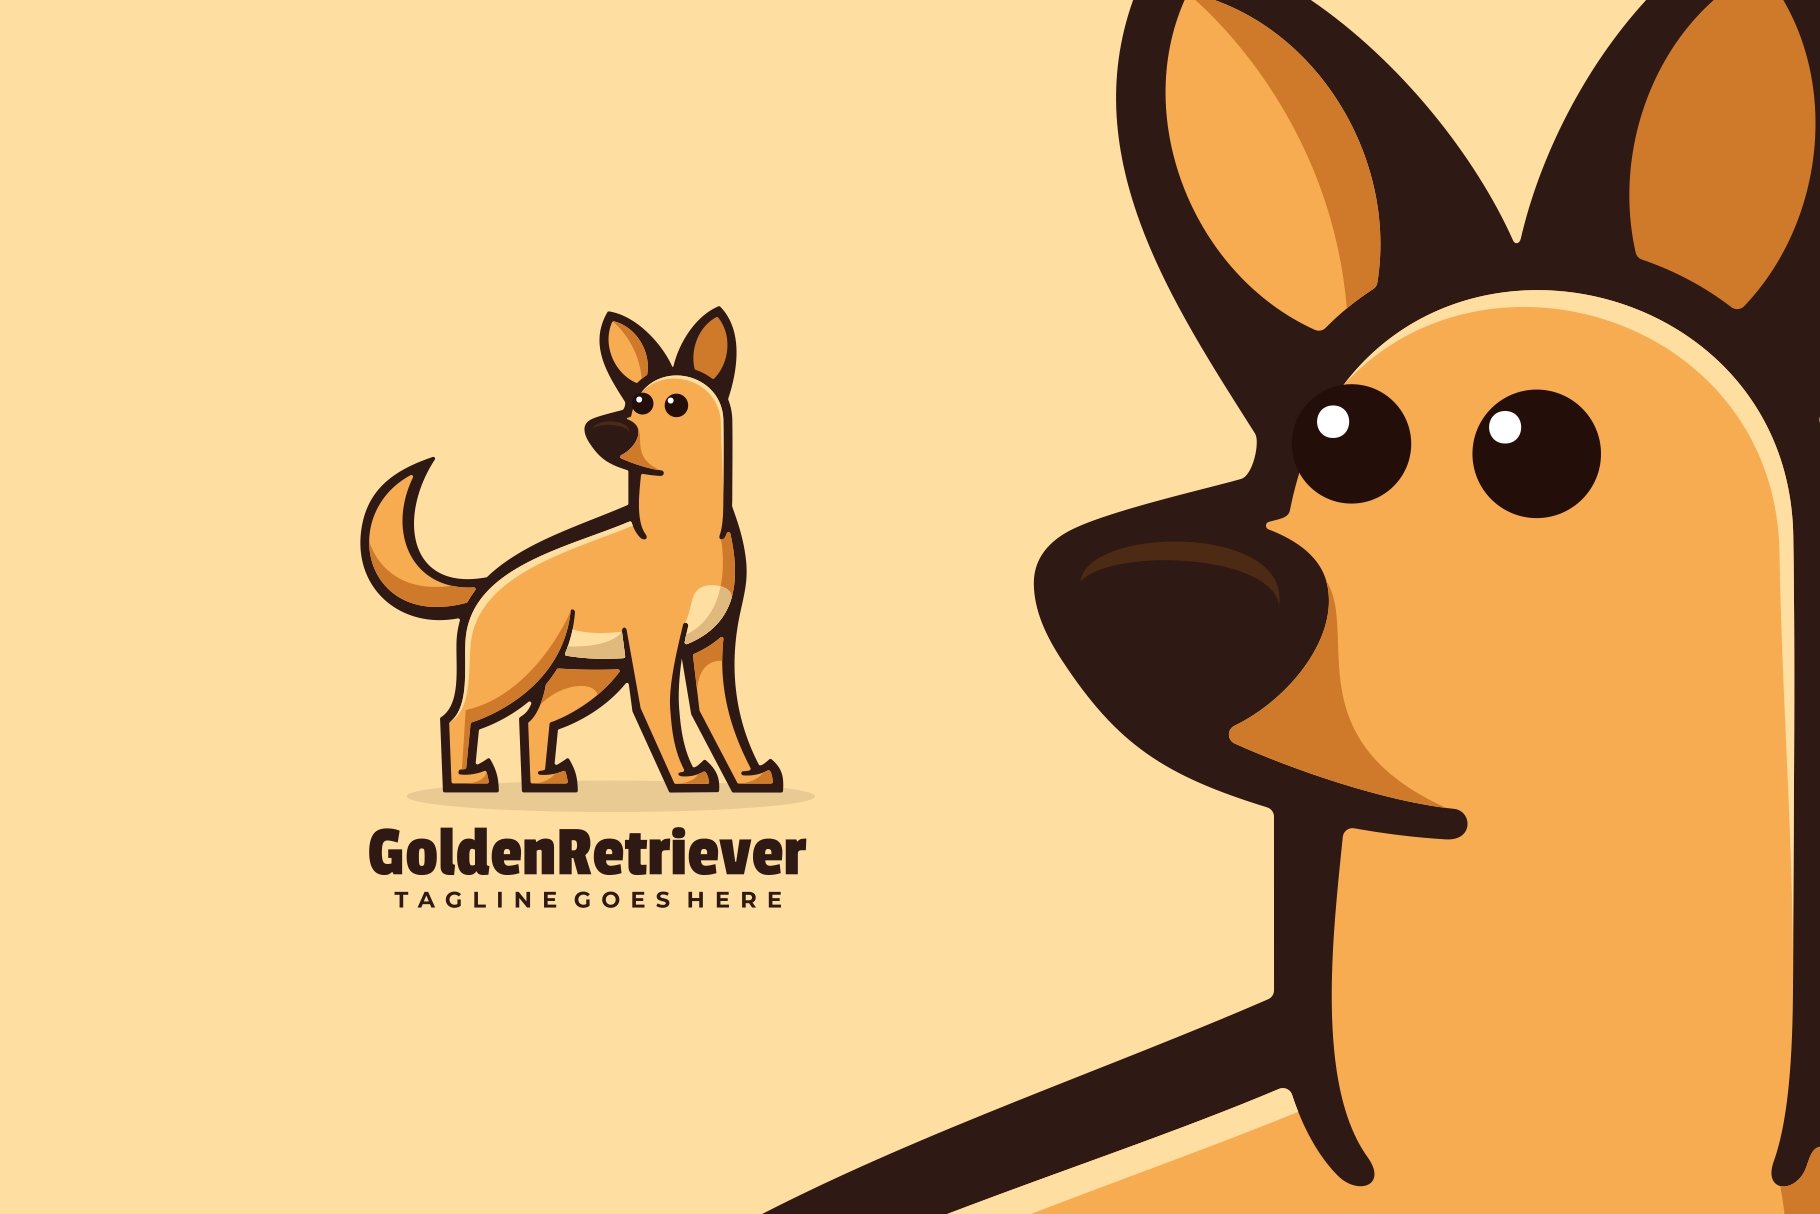 Golden Retriever Cartoon Logo cover image.